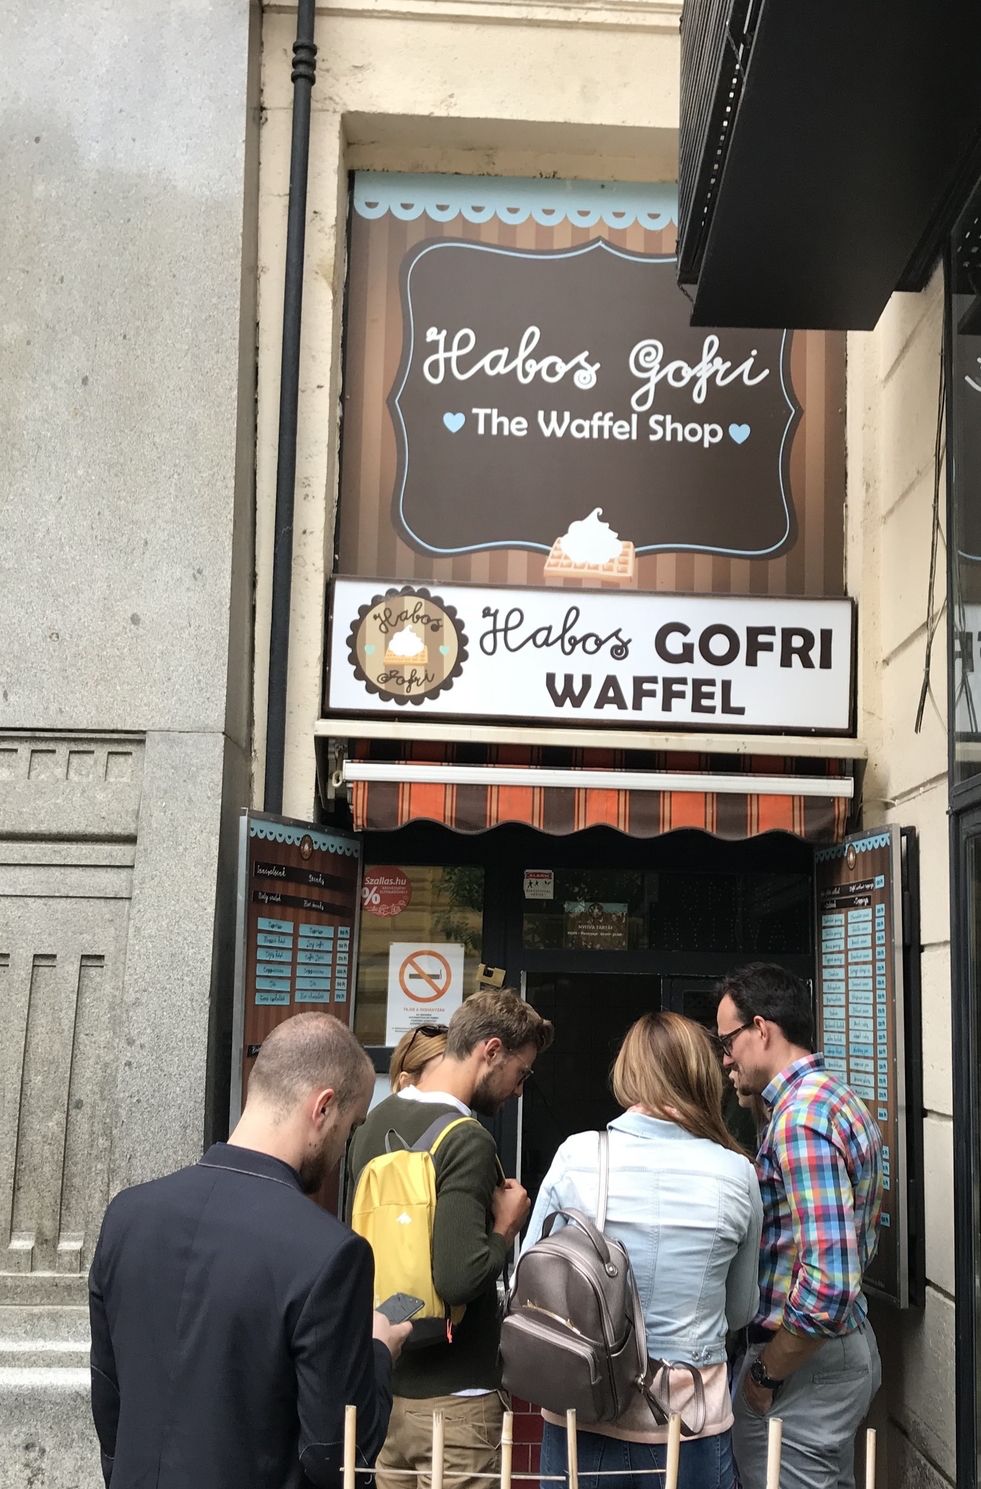 Habos Gofri Waffel, Budapest